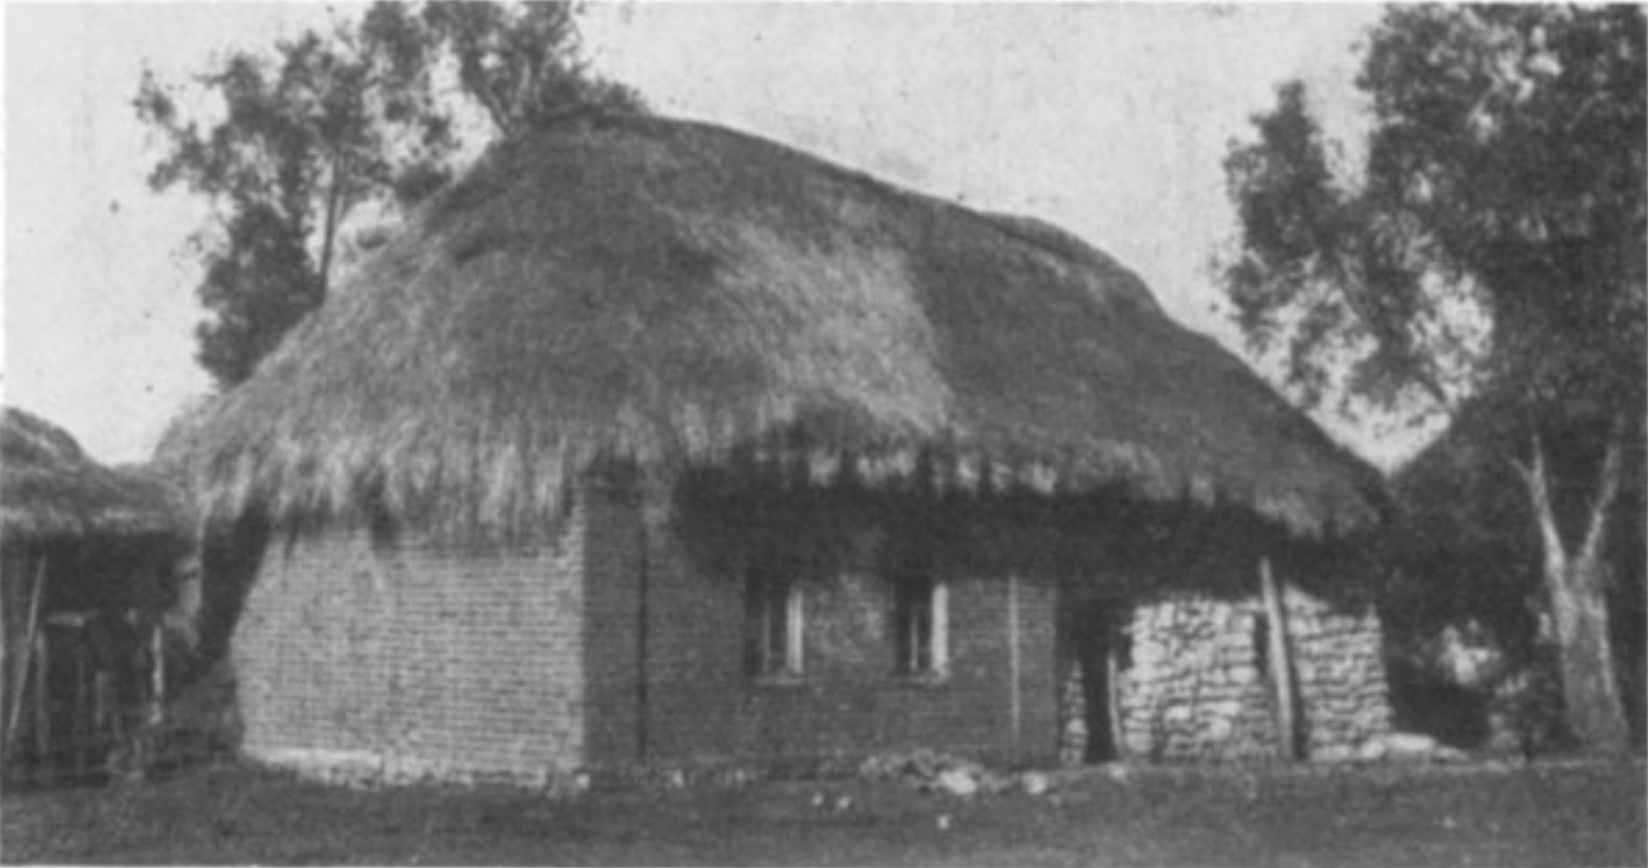 Brick masonry home, presumably in the village of Muraevnia